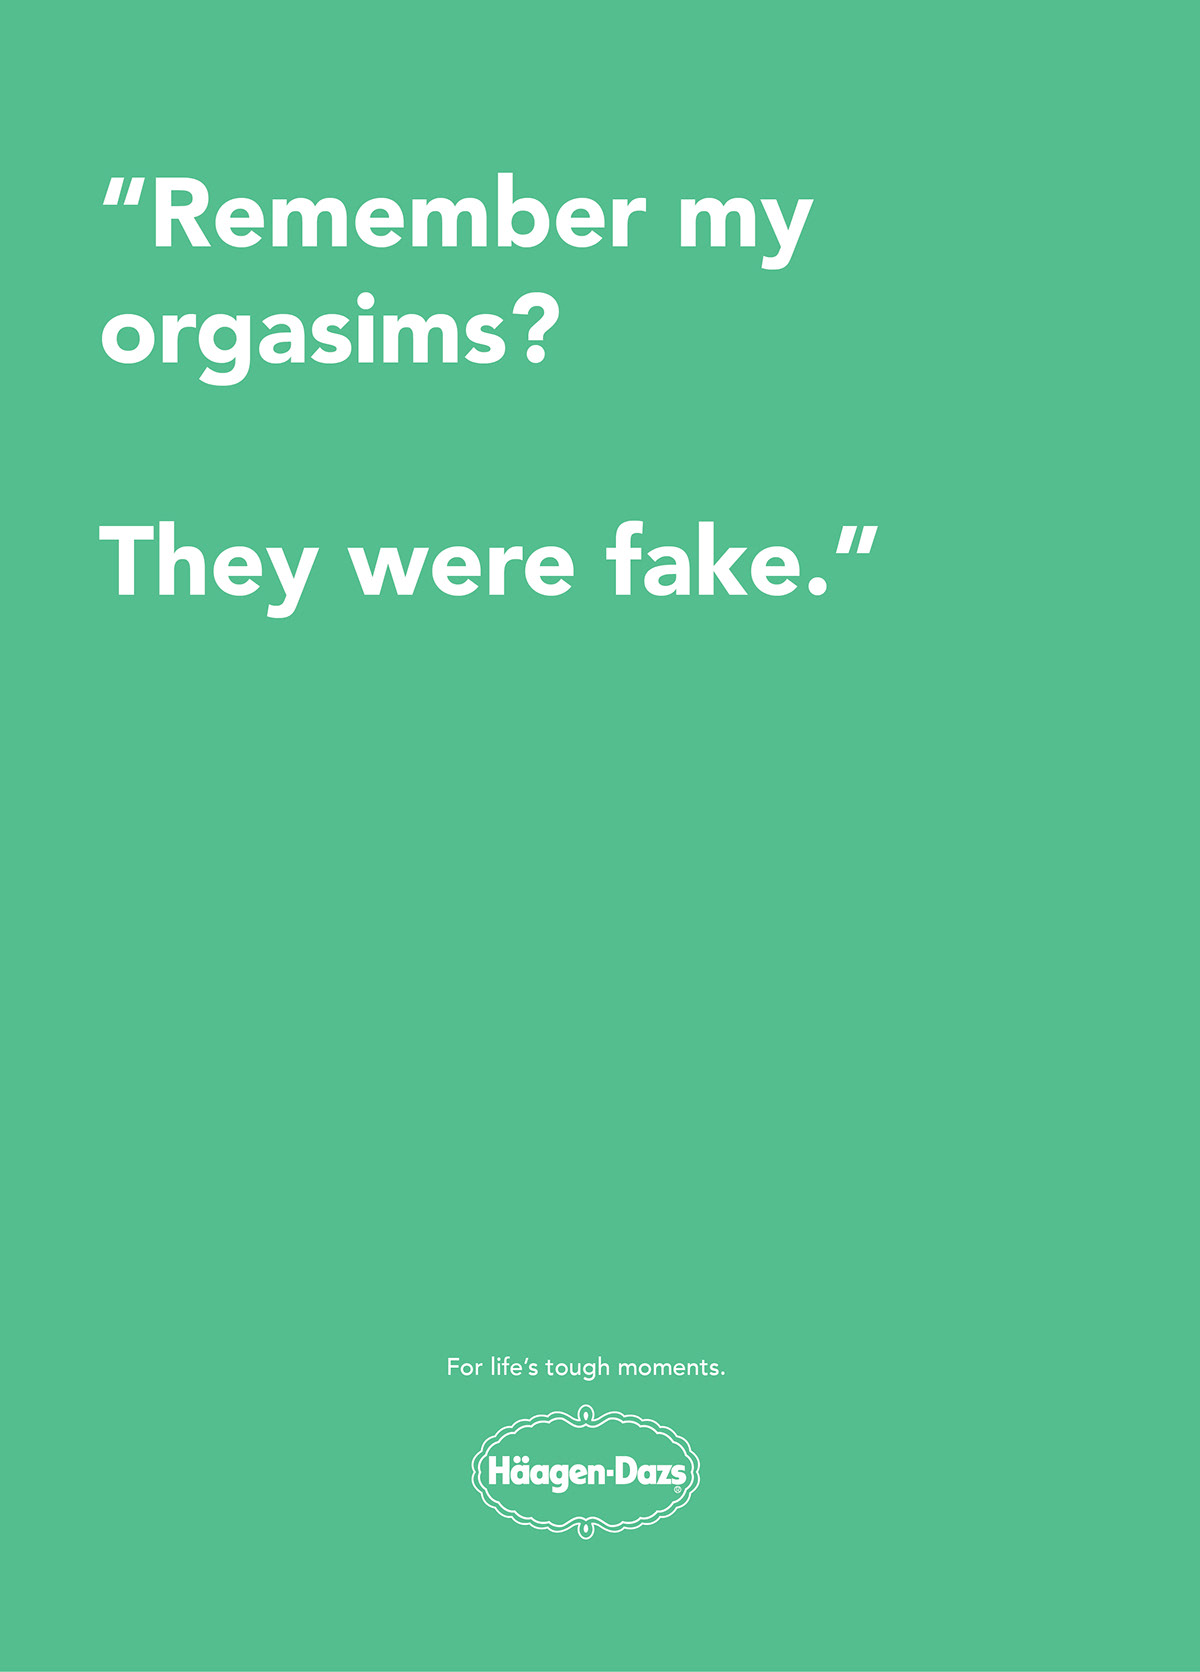 Haagen-Das ice cream Emotional posters break-up Quotes